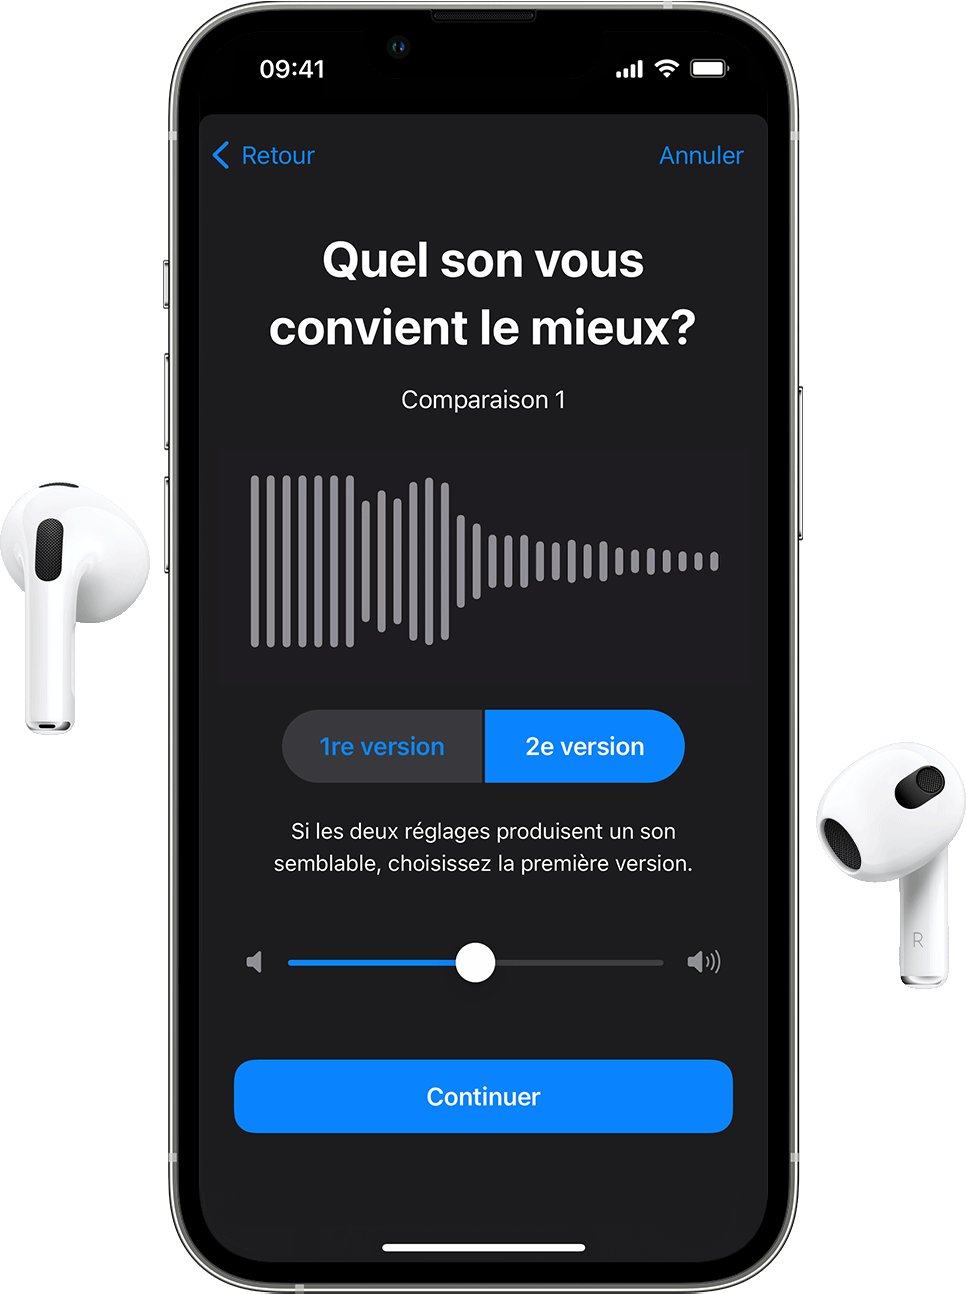 Paire d’AirPods et iPhone affichant l’écran de configuration audio personnalisée qui invite l’utilisateur à sélectionner l’extrait audio le plus clair.